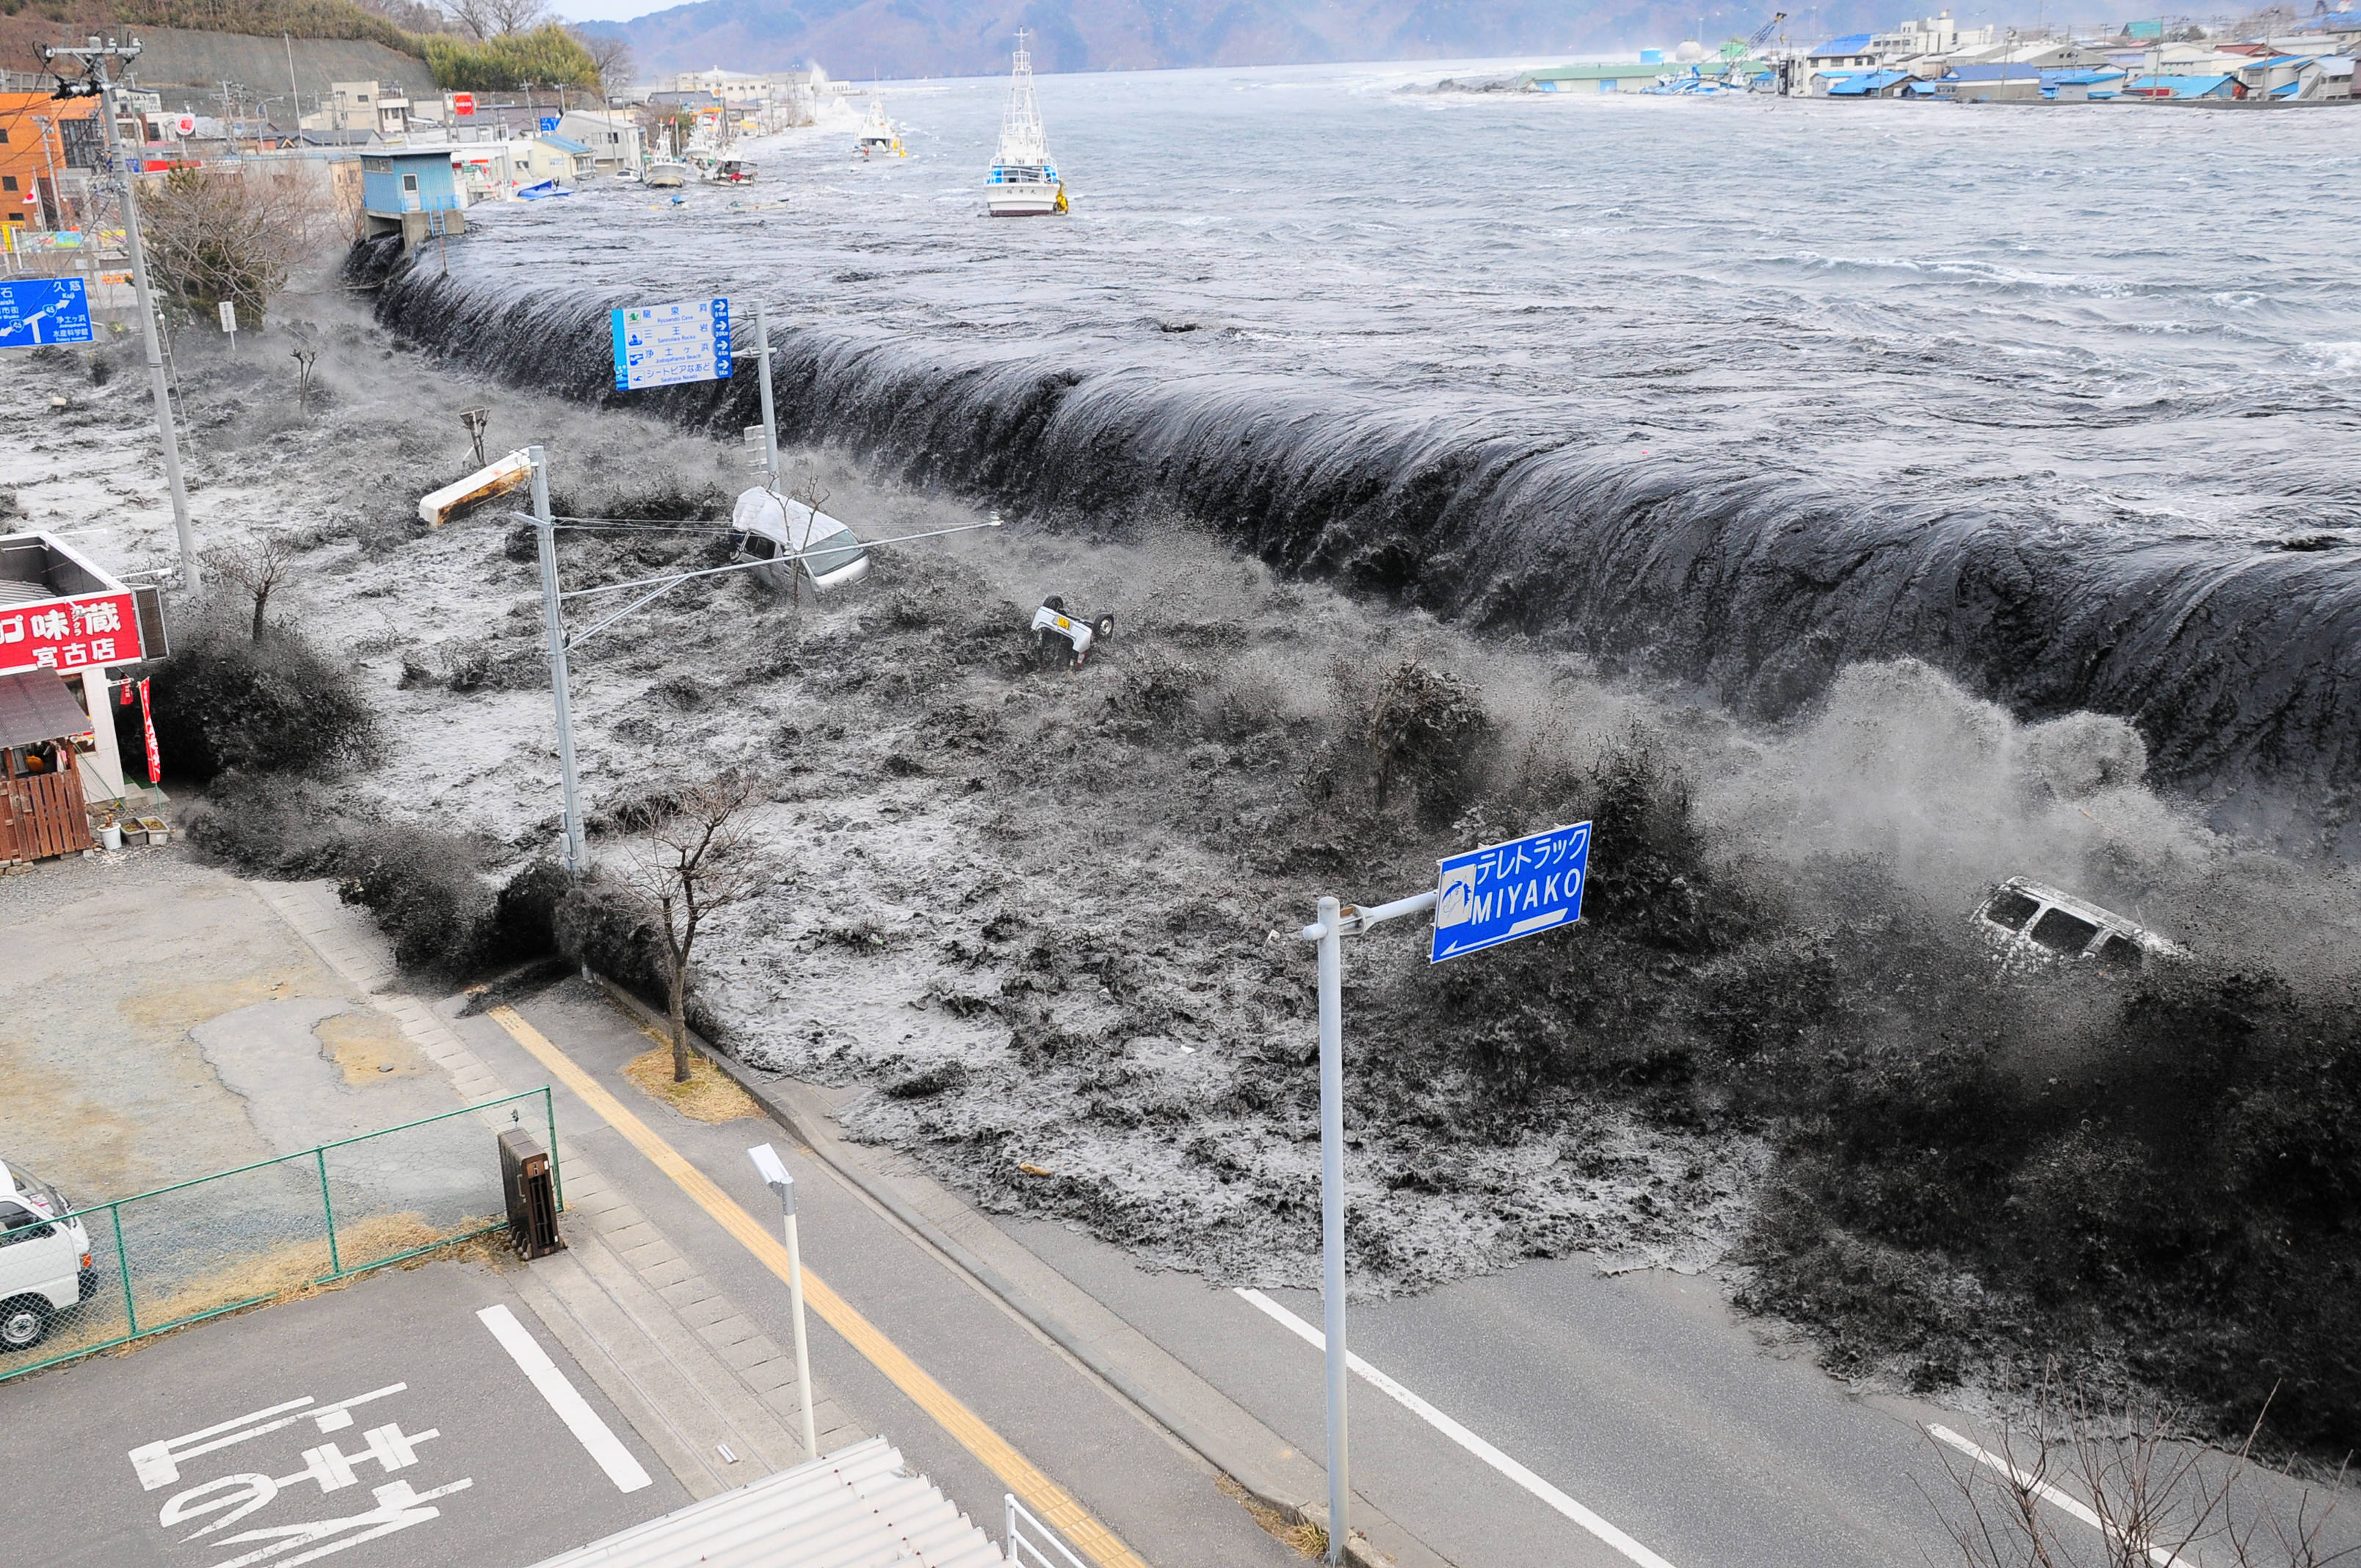 Jordbävningen inträffade klockan 14.46 11 mars 2011 på 10 kilometers djup i havet ungefär 380 kilimeter ut i havet nordost om Tokyo.